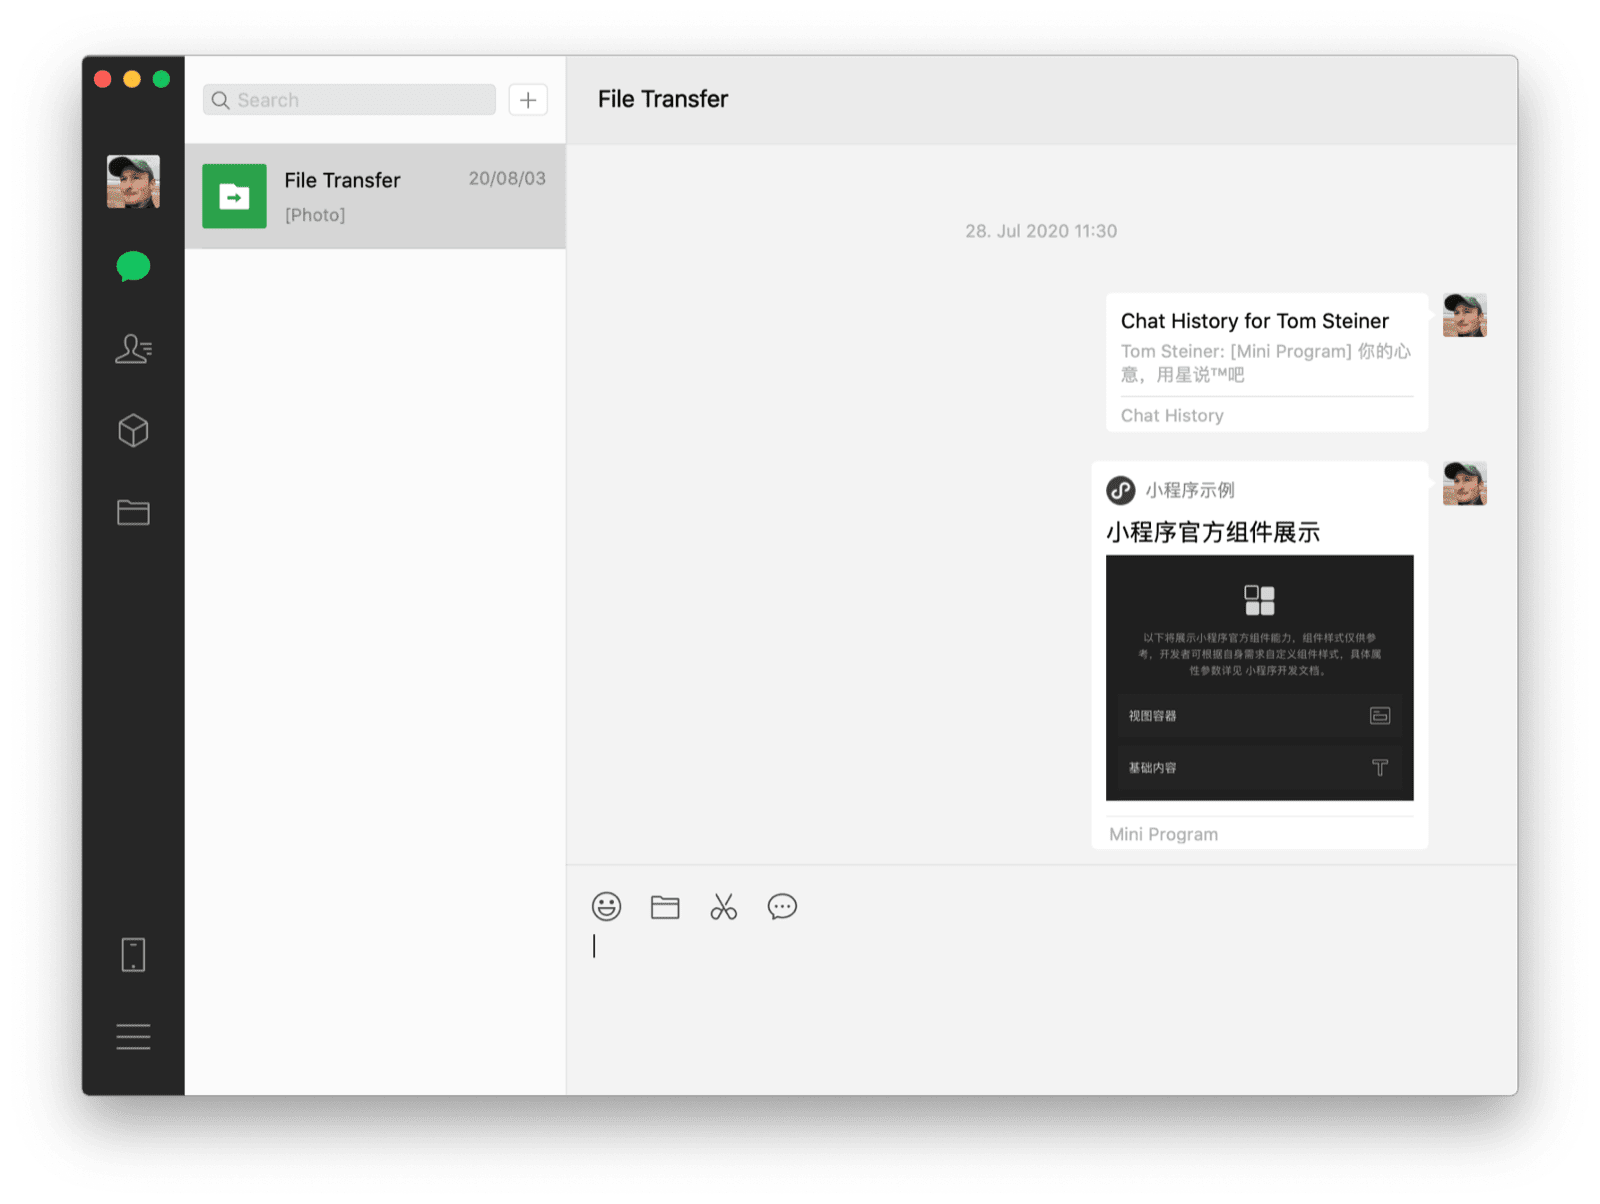 इस इमेज में, WeChat में macOS डेस्कटॉप क्लाइंट का इस्तेमाल करके, एक मिनी ऐप्लिकेशन से खुद से चैट की जा रही है. इस चैट में, शेयर किए गए मिनी ऐप्लिकेशन और चैट का इतिहास दिख रहा है.